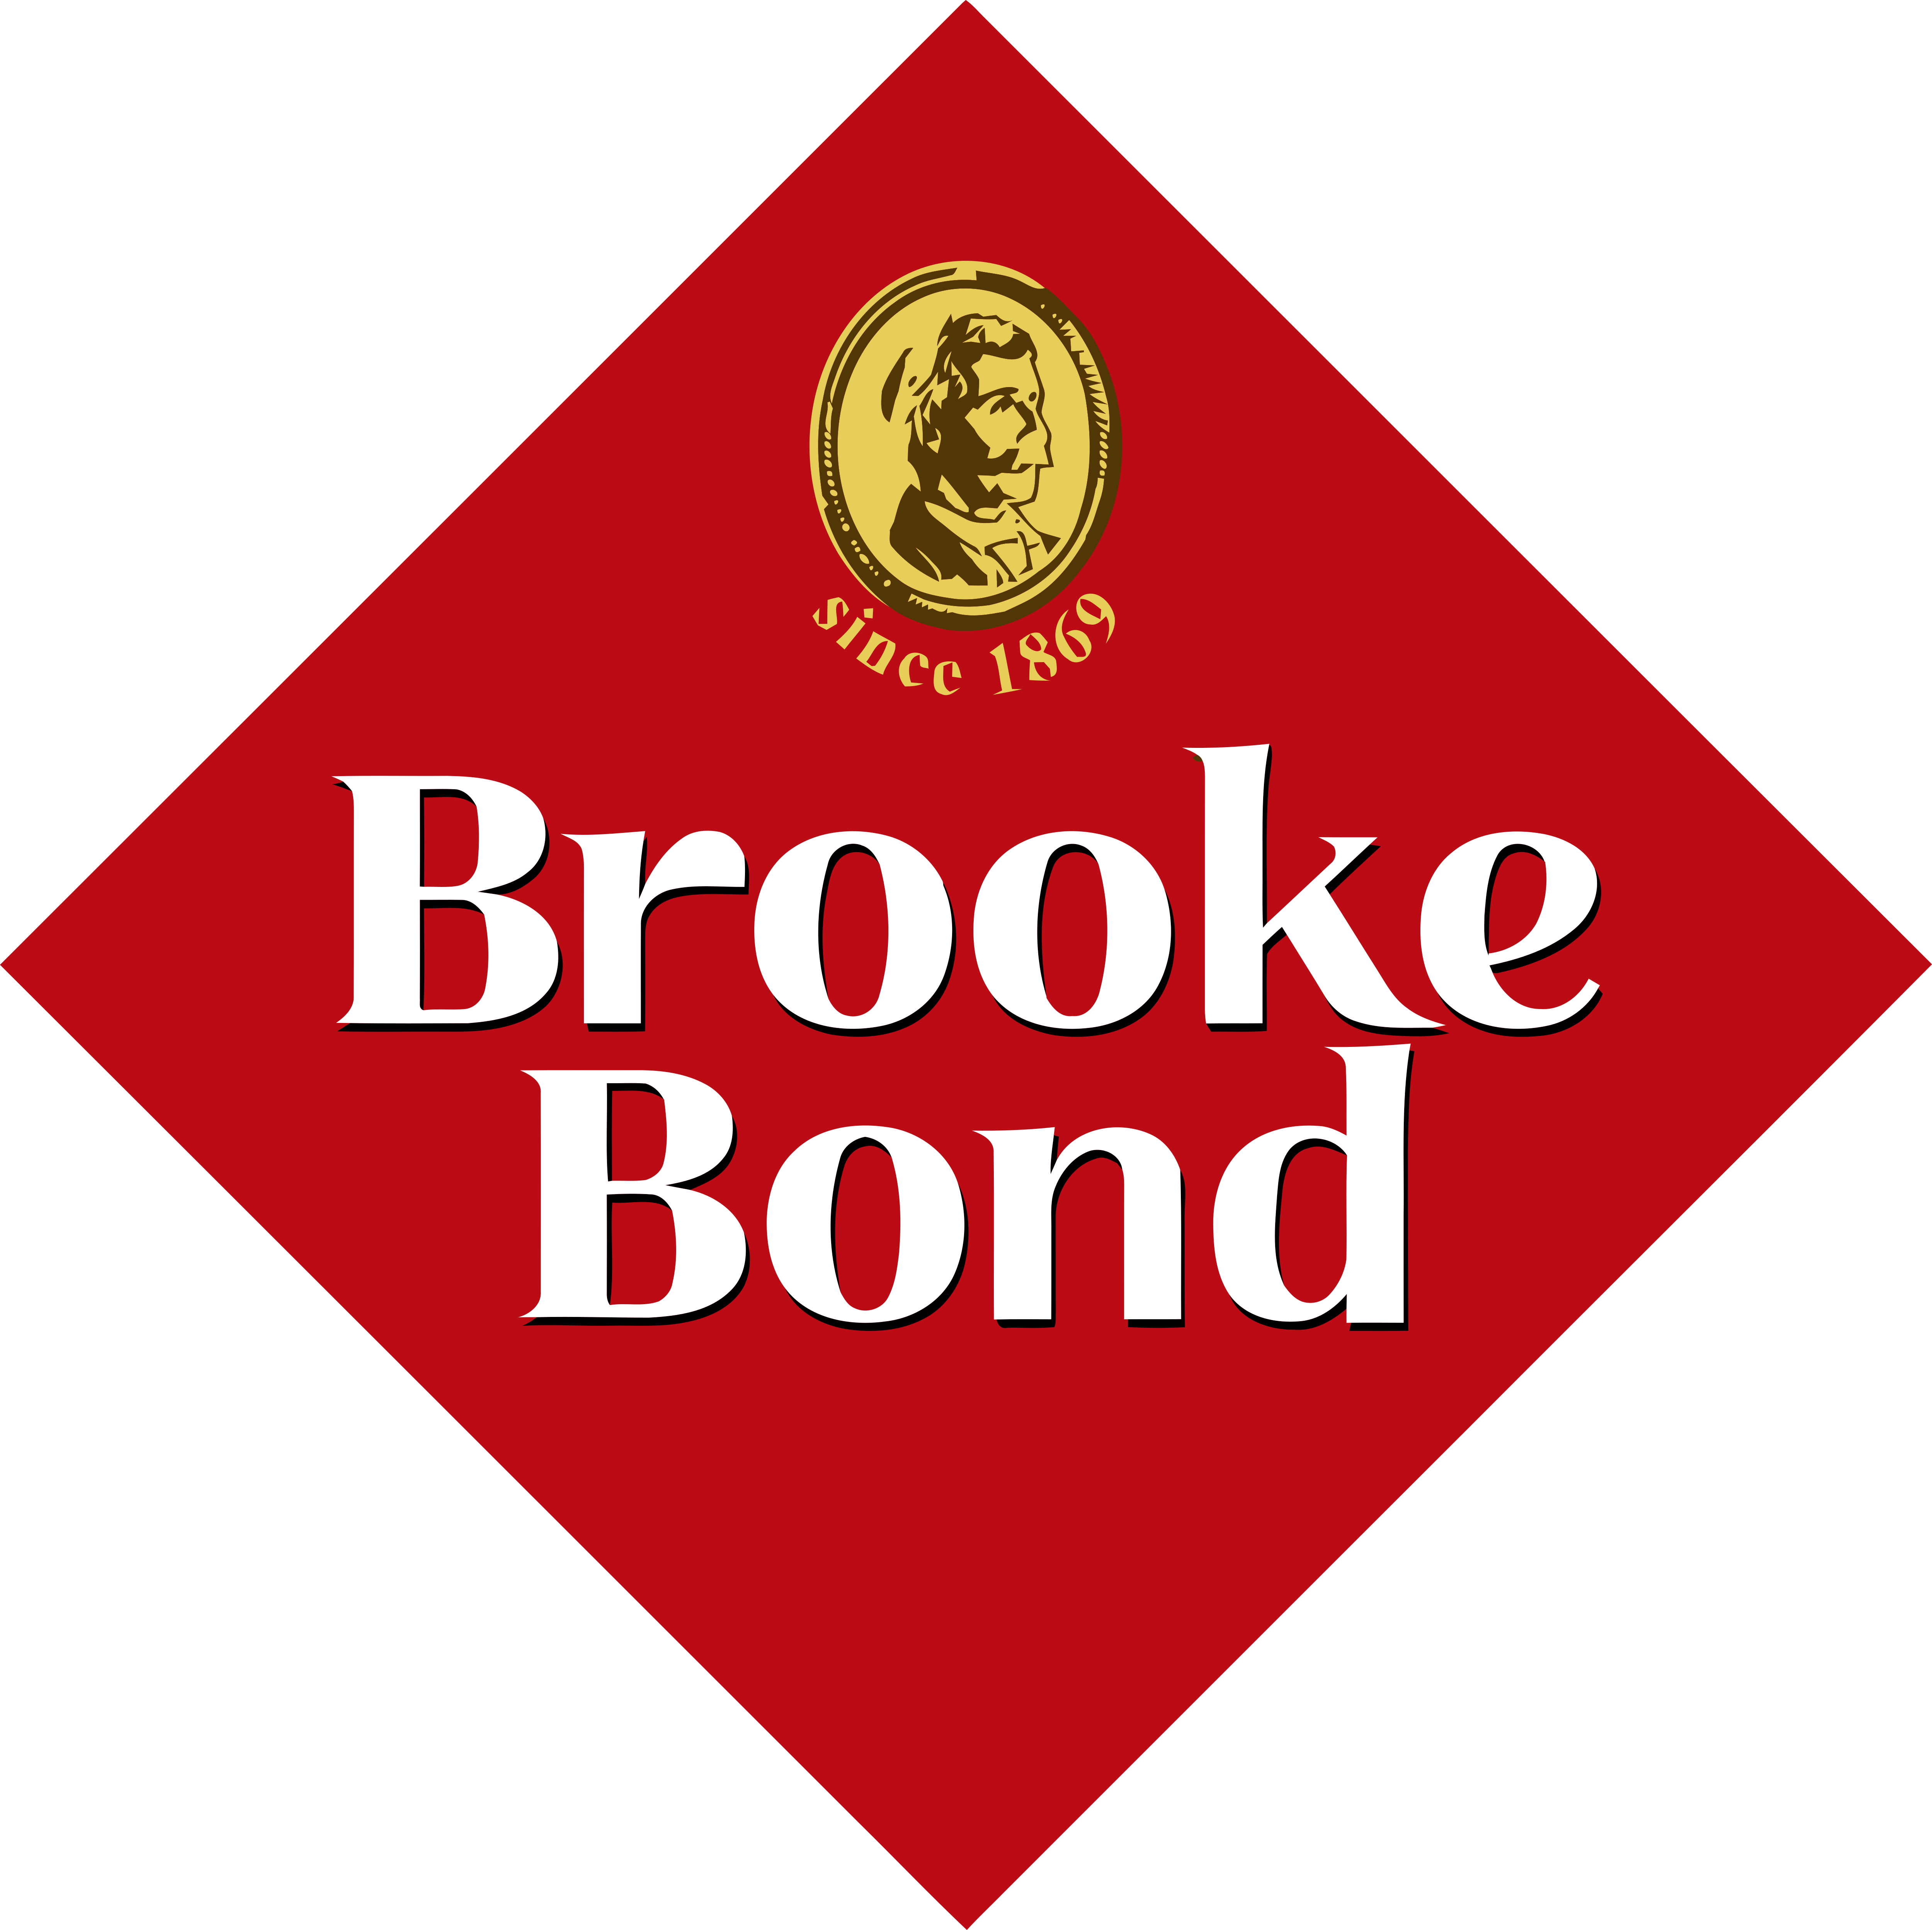 Brooke Bond – Logos Download